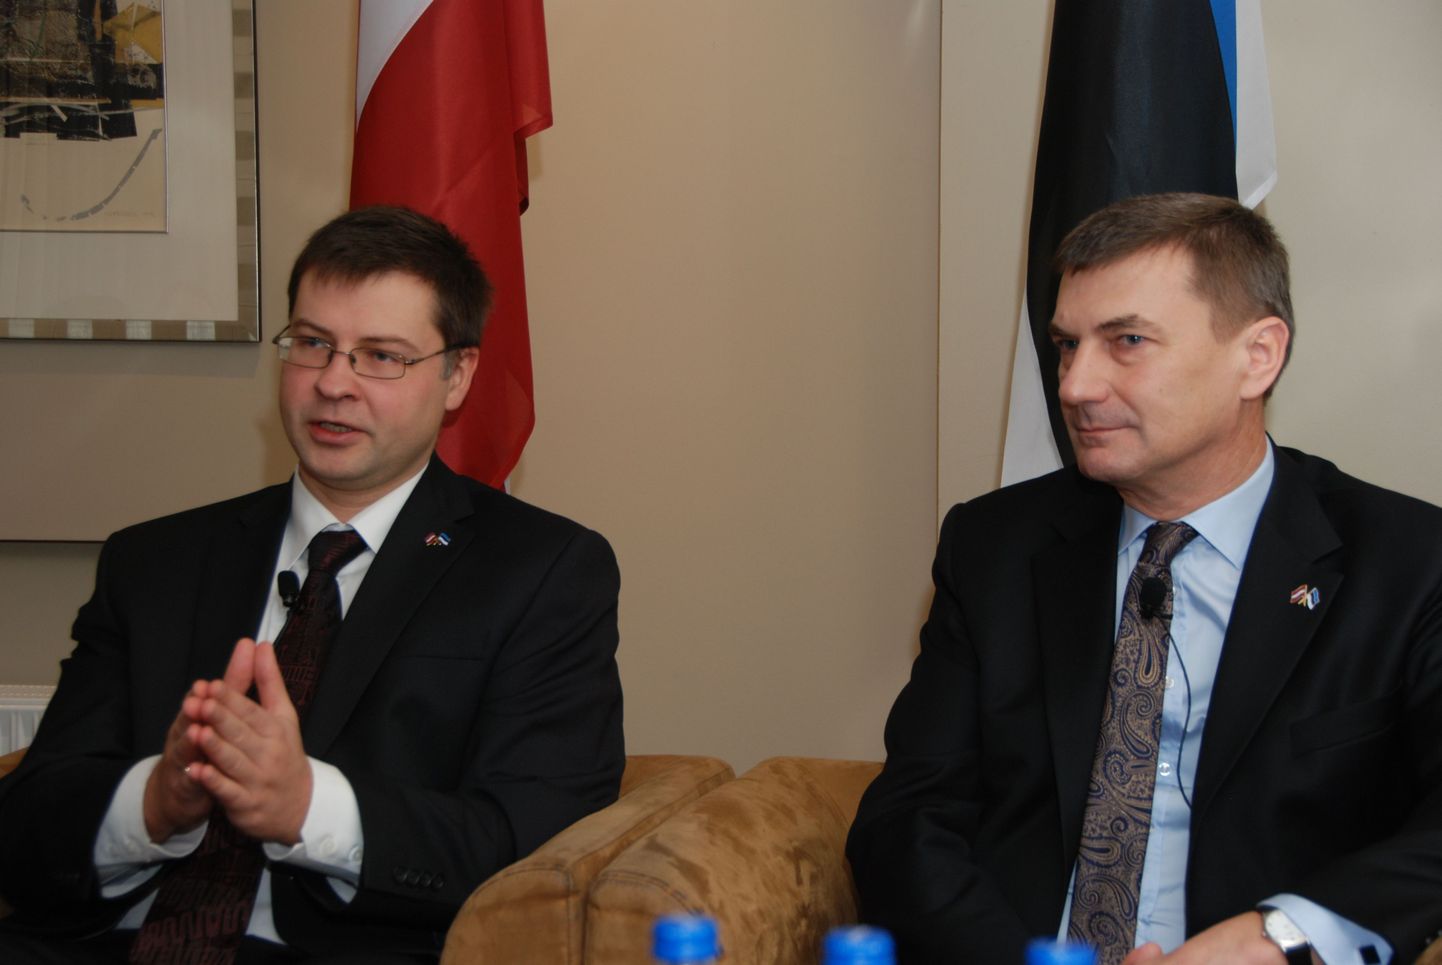 Läti peaminister Valdis Dombrovskis (vasakul) ja tema Eesti kolleeg Andrus Ansip.